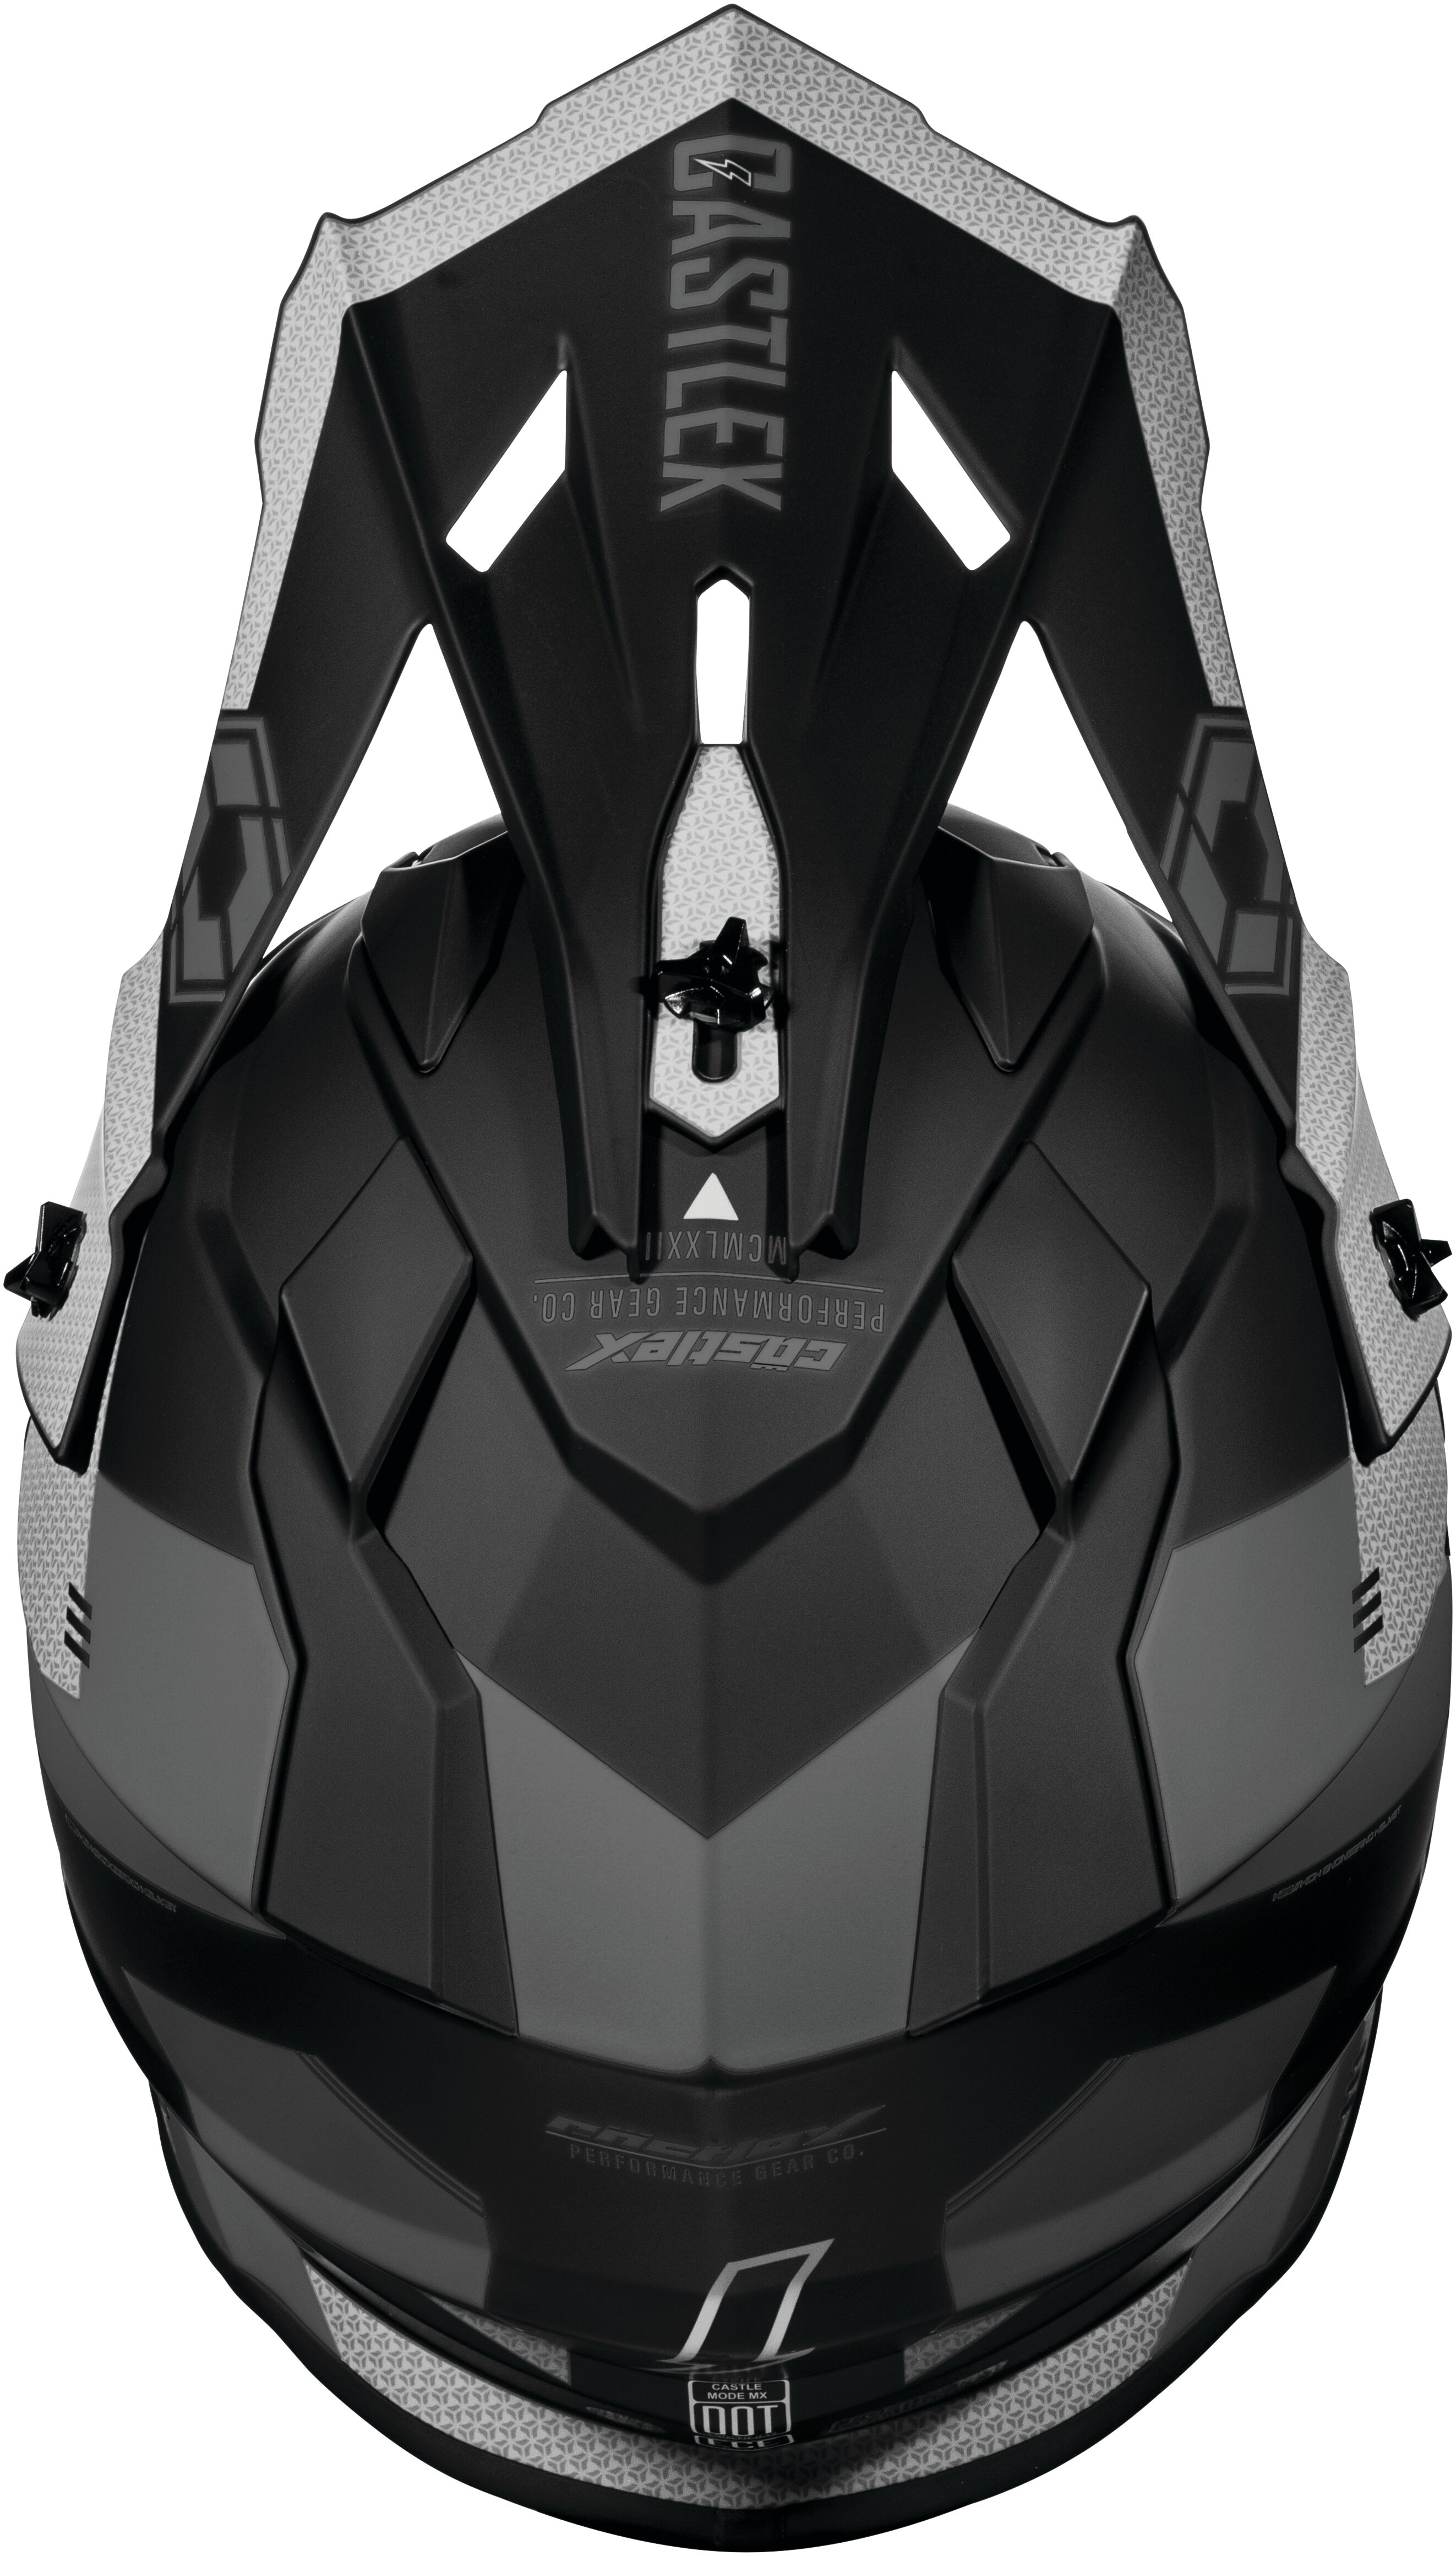 Mode MX Corsa Helmet